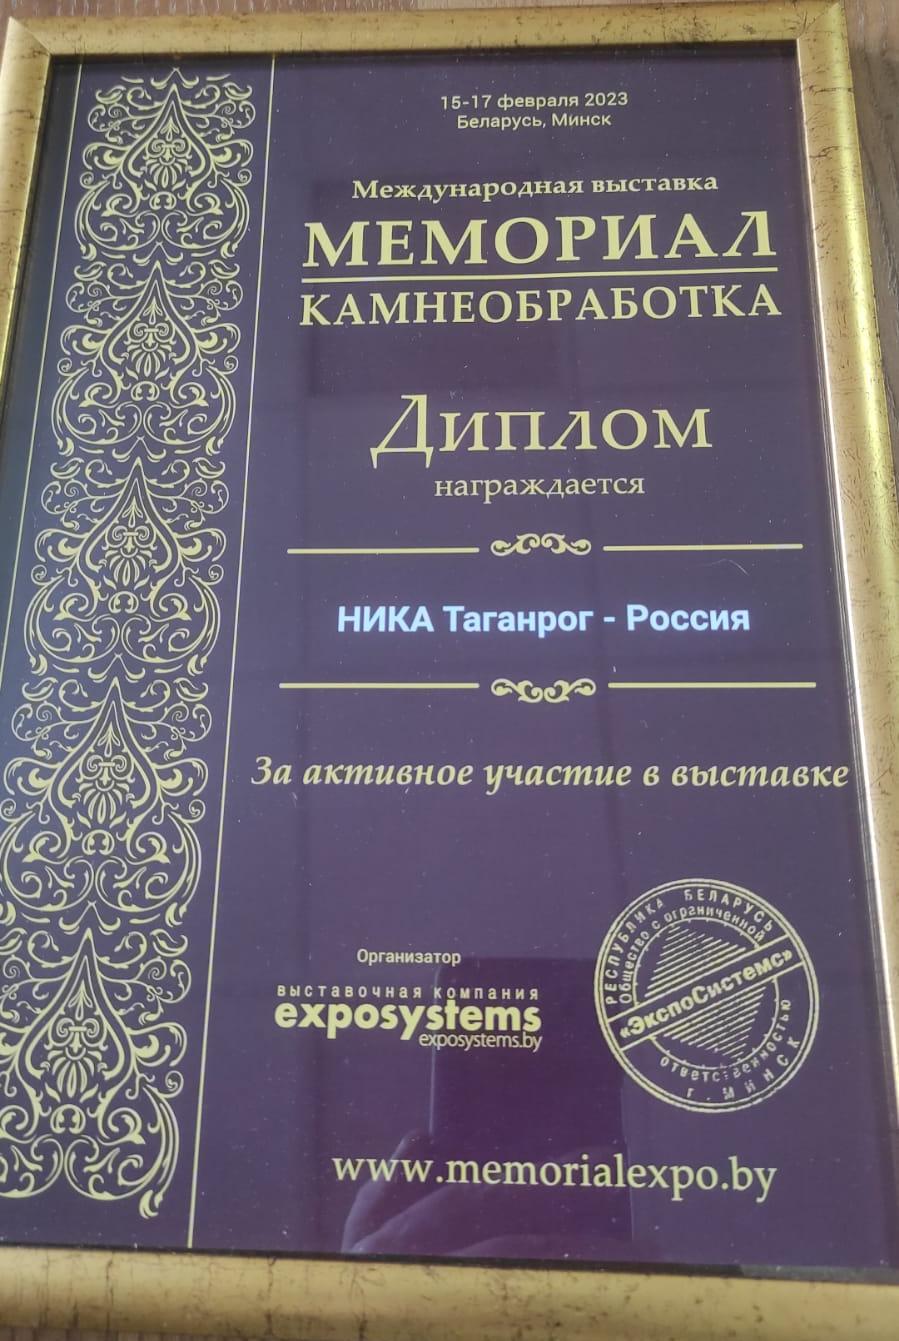 Международная выставка "МЕМОРИАЛ КАМНЕОБРАБОТКА 2023" в Минске